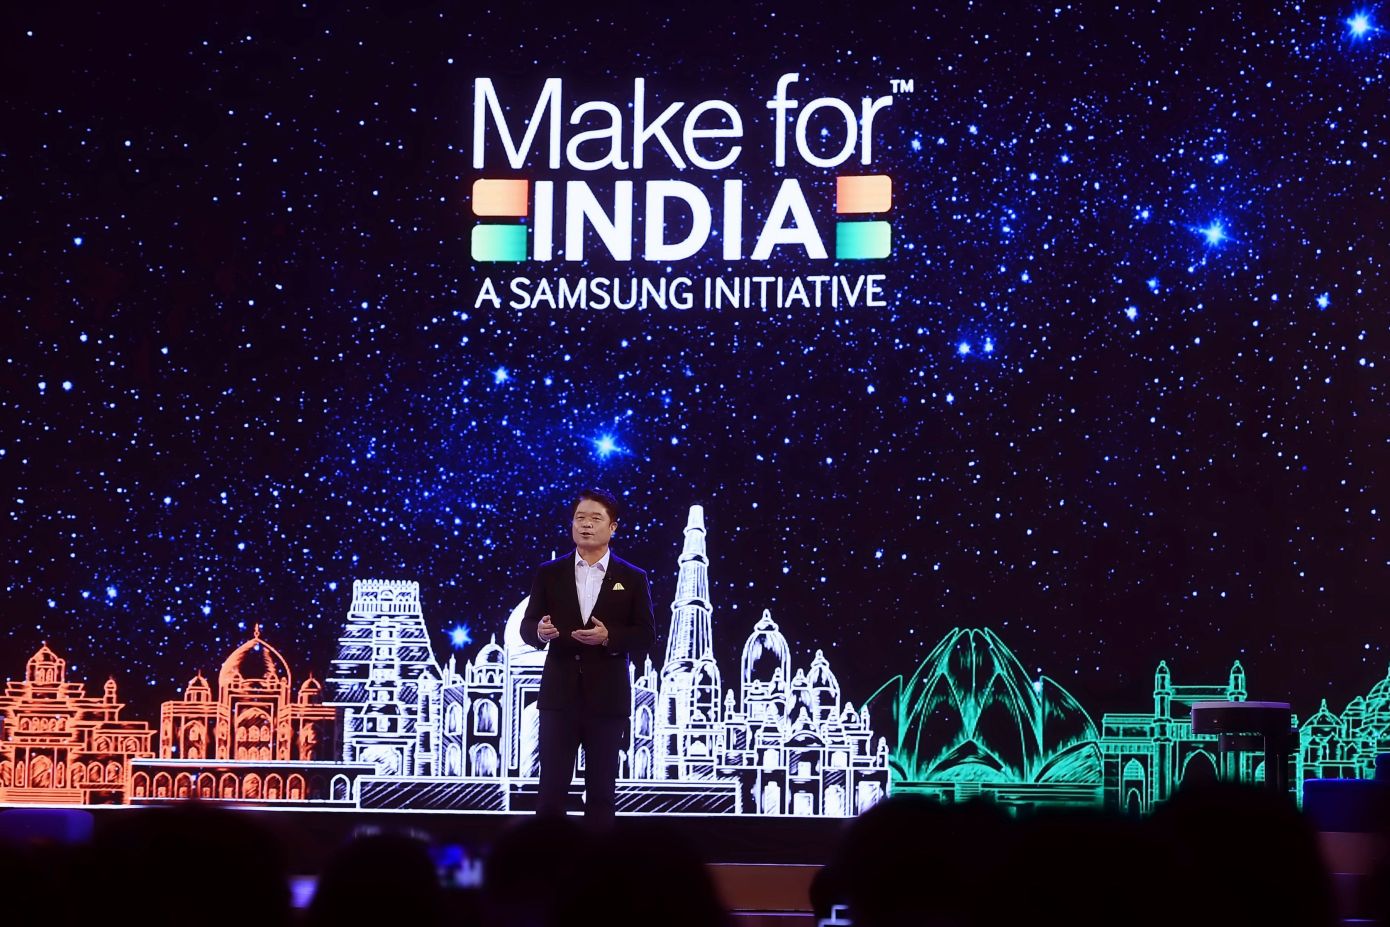 Samsung 500 milyon dolar yatırım ile tekrar Hindistan'da! - ShiftDelete.Net